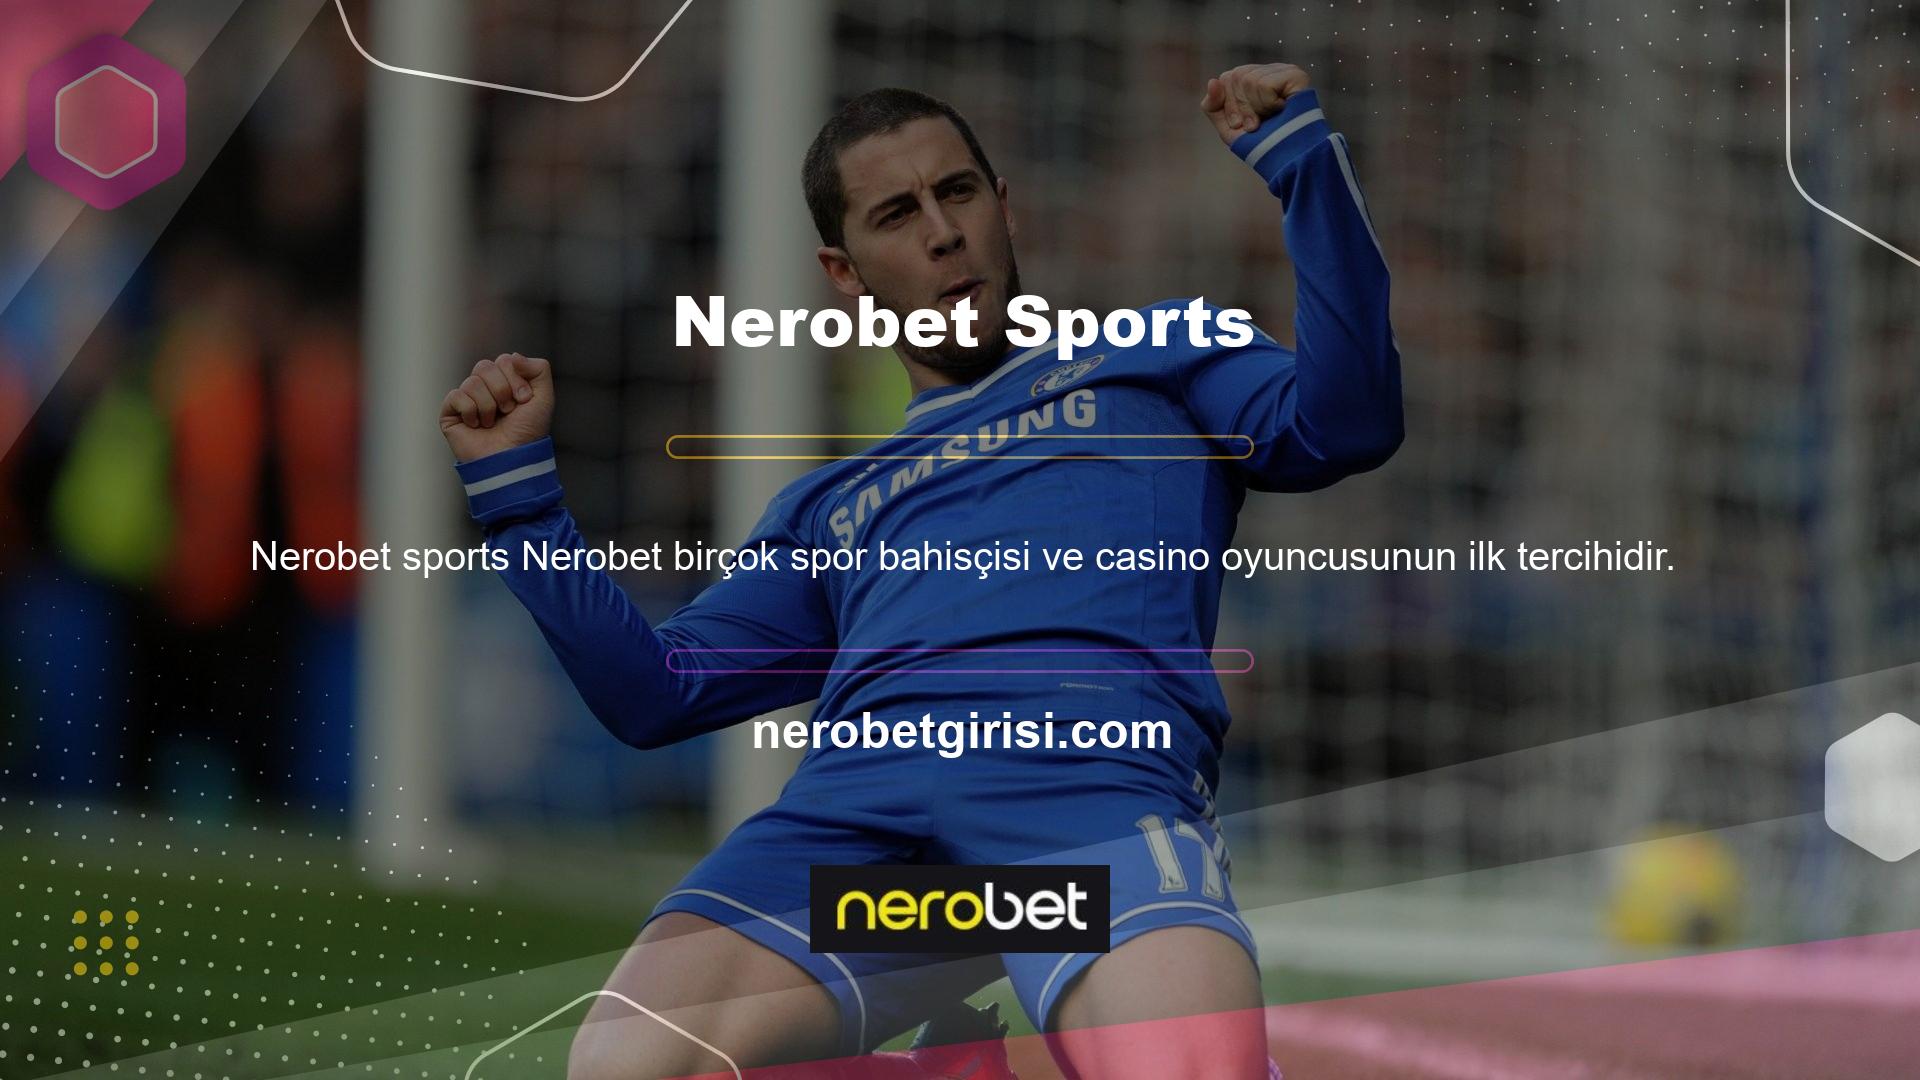 Nerobet yabancı bir casino sitesi olduğundan diğer tüm online casino siteleri gibi Türkiye’de yasa dışı casino sitesi olarak sınıflandırılmaktadır